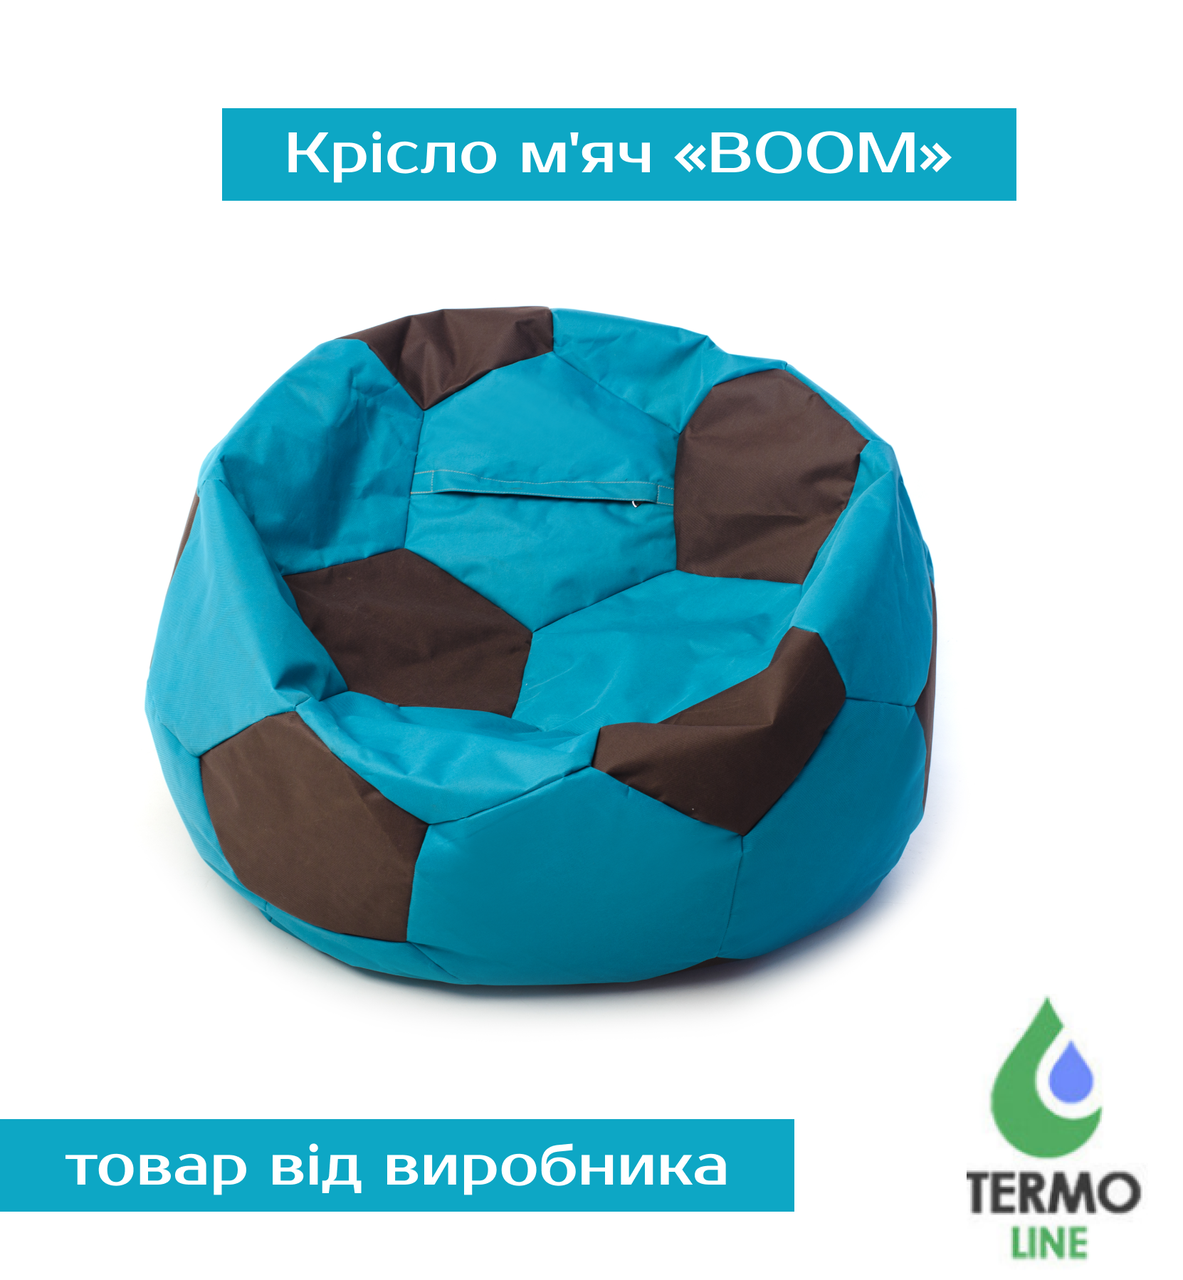 Крісло м'яч «BOOM» 100см бірюза-коричневий, фото 1